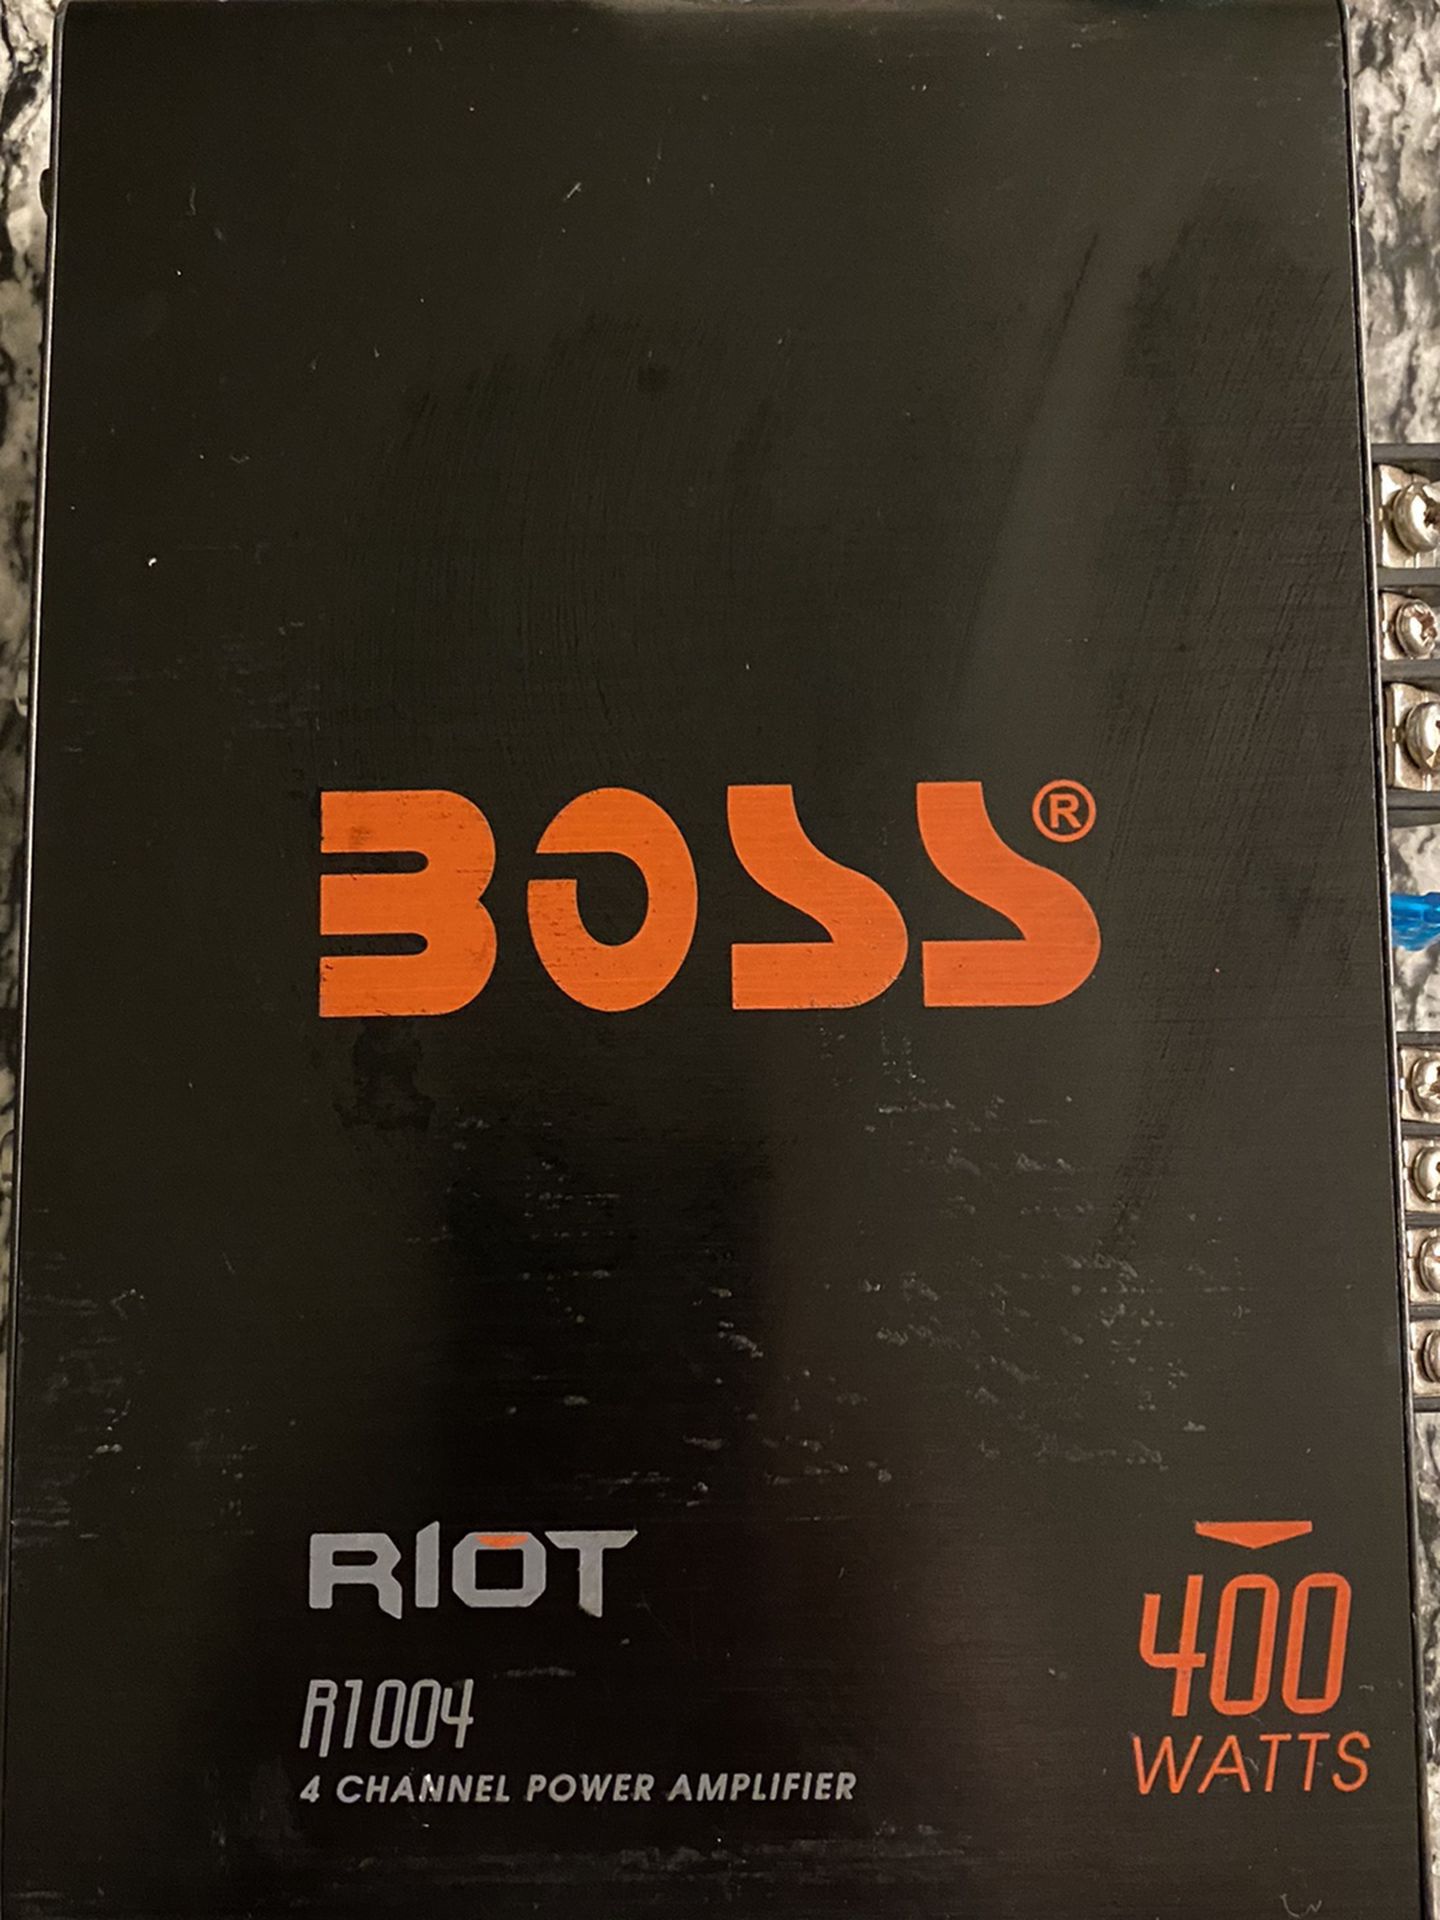 Boss Riot R1004